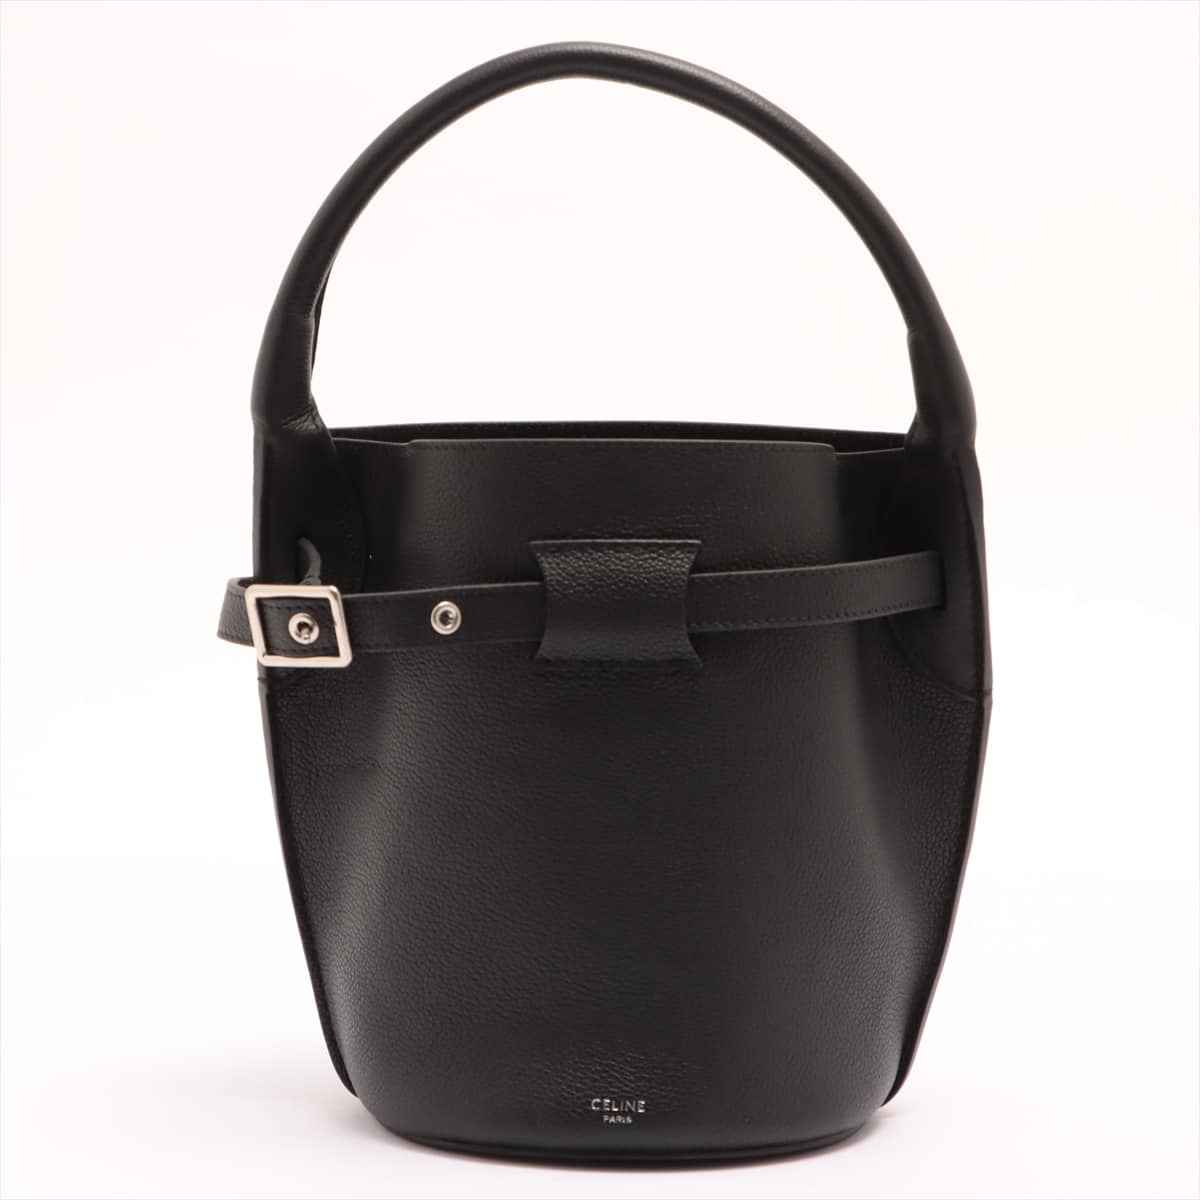 CELINE BIG BAG buckets Nano Leather 2way shoulder bag Black